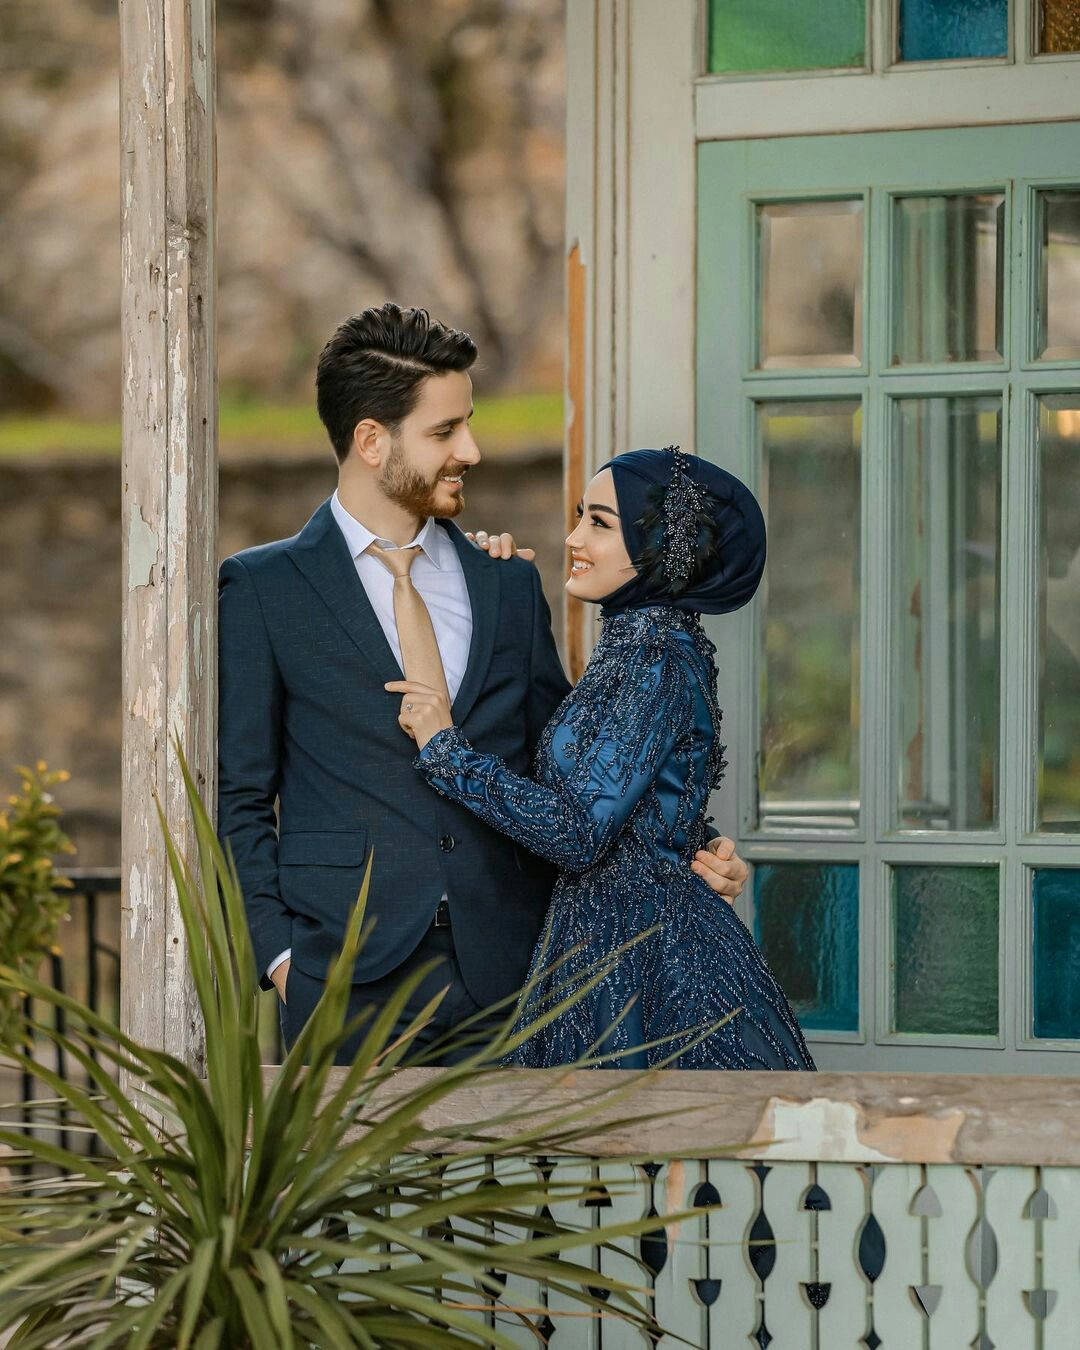 Muslim Couple At Veranda Photoshoot Background